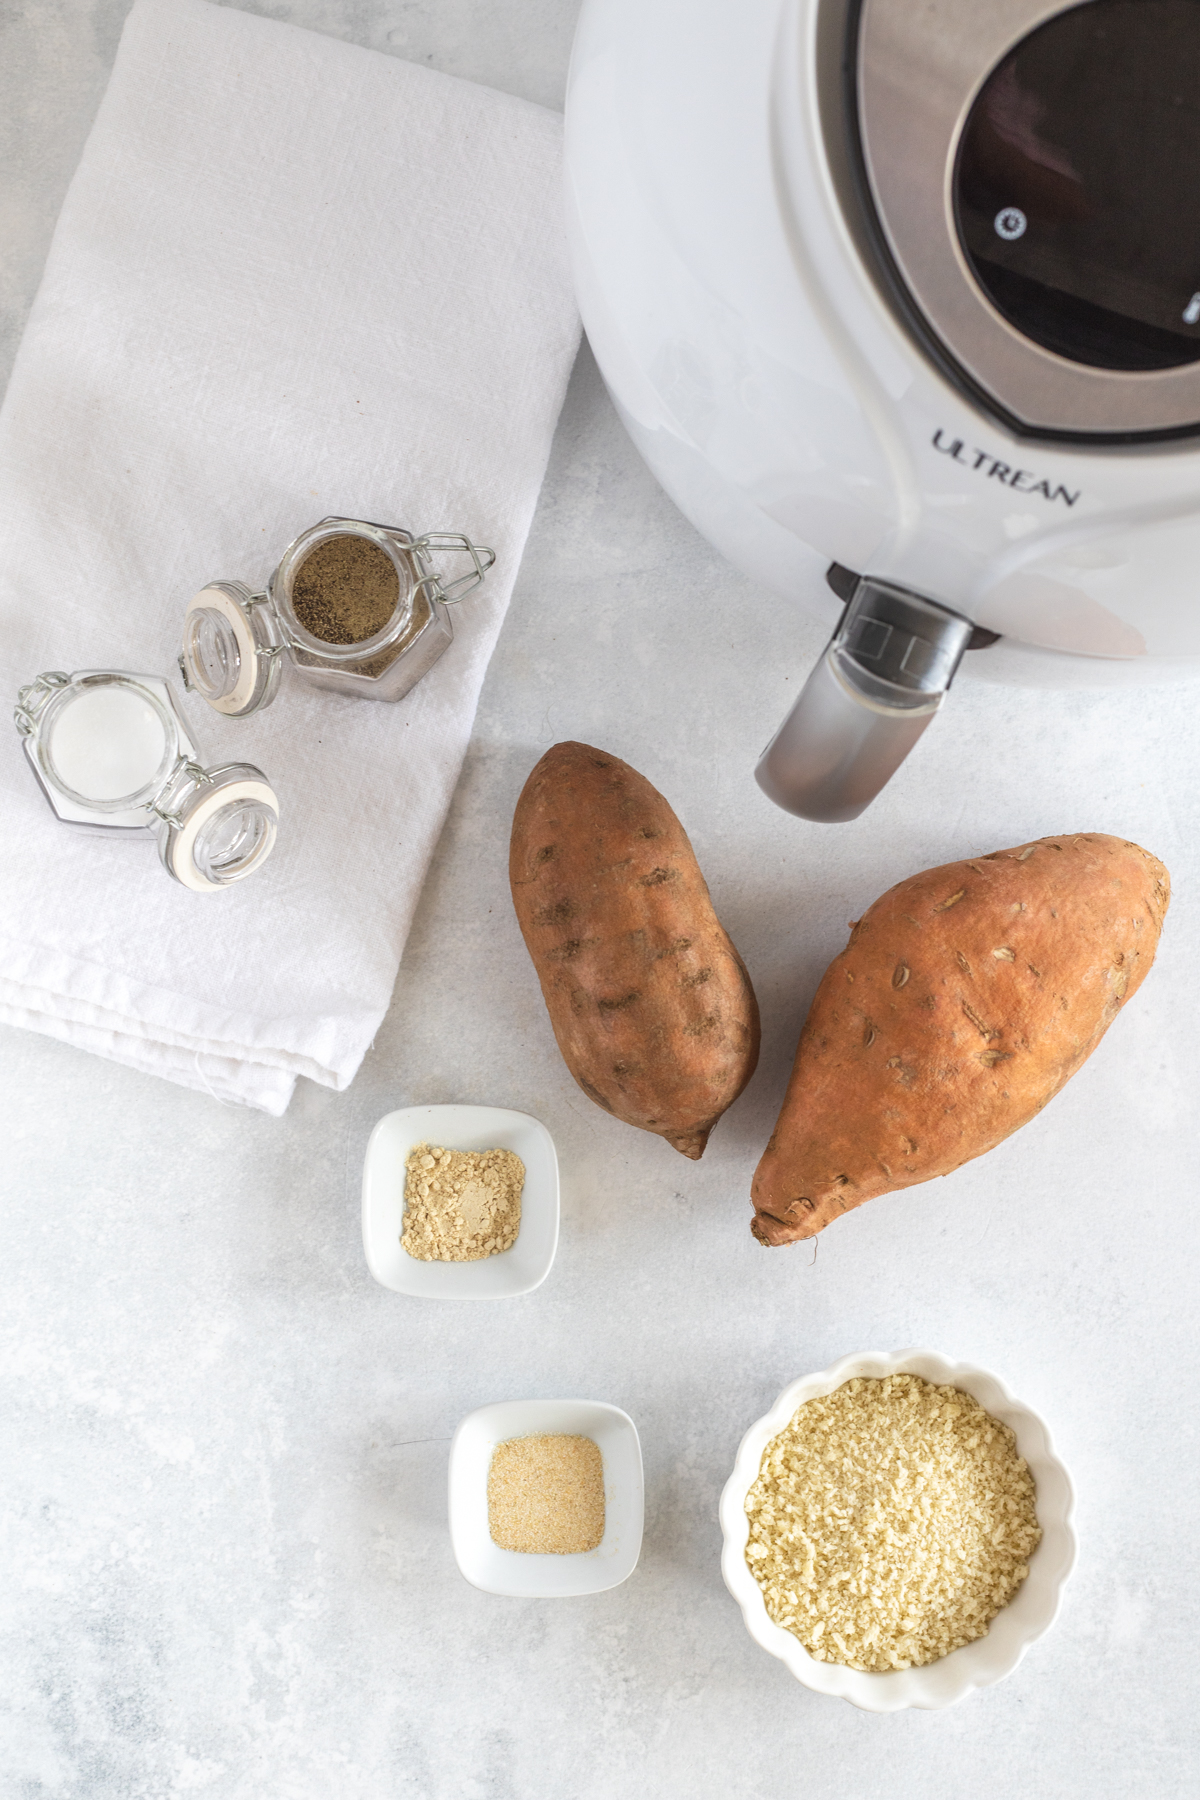 Ingredients to make Air Fryer Sweet Potato Tater Tots